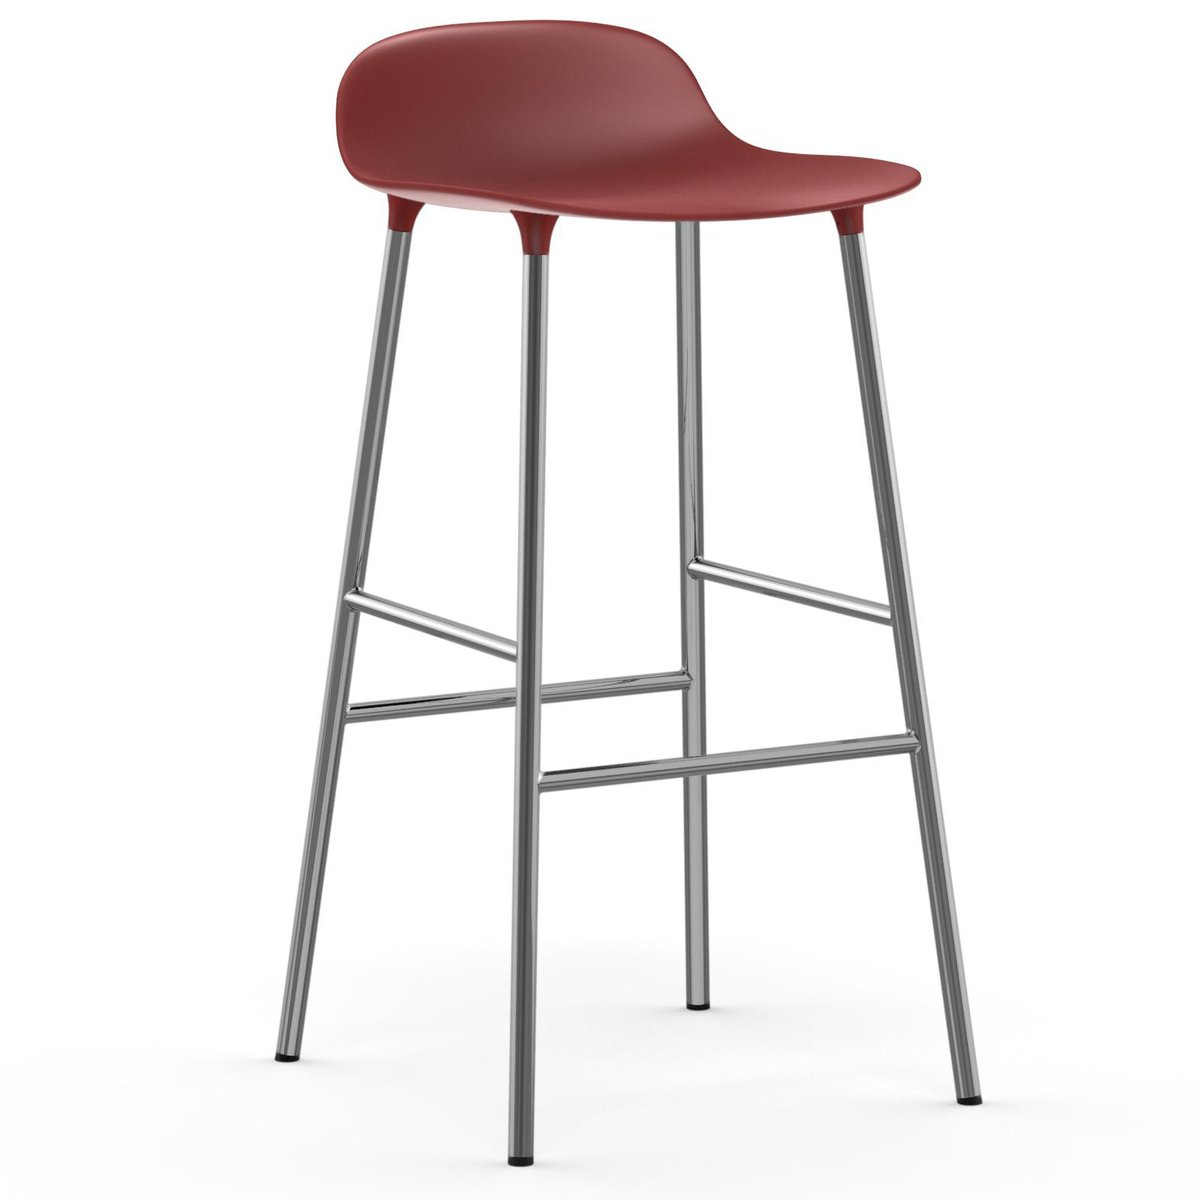 Bilde av Normann Copenhagen Form barstol forkromede bein 75 cm Rød